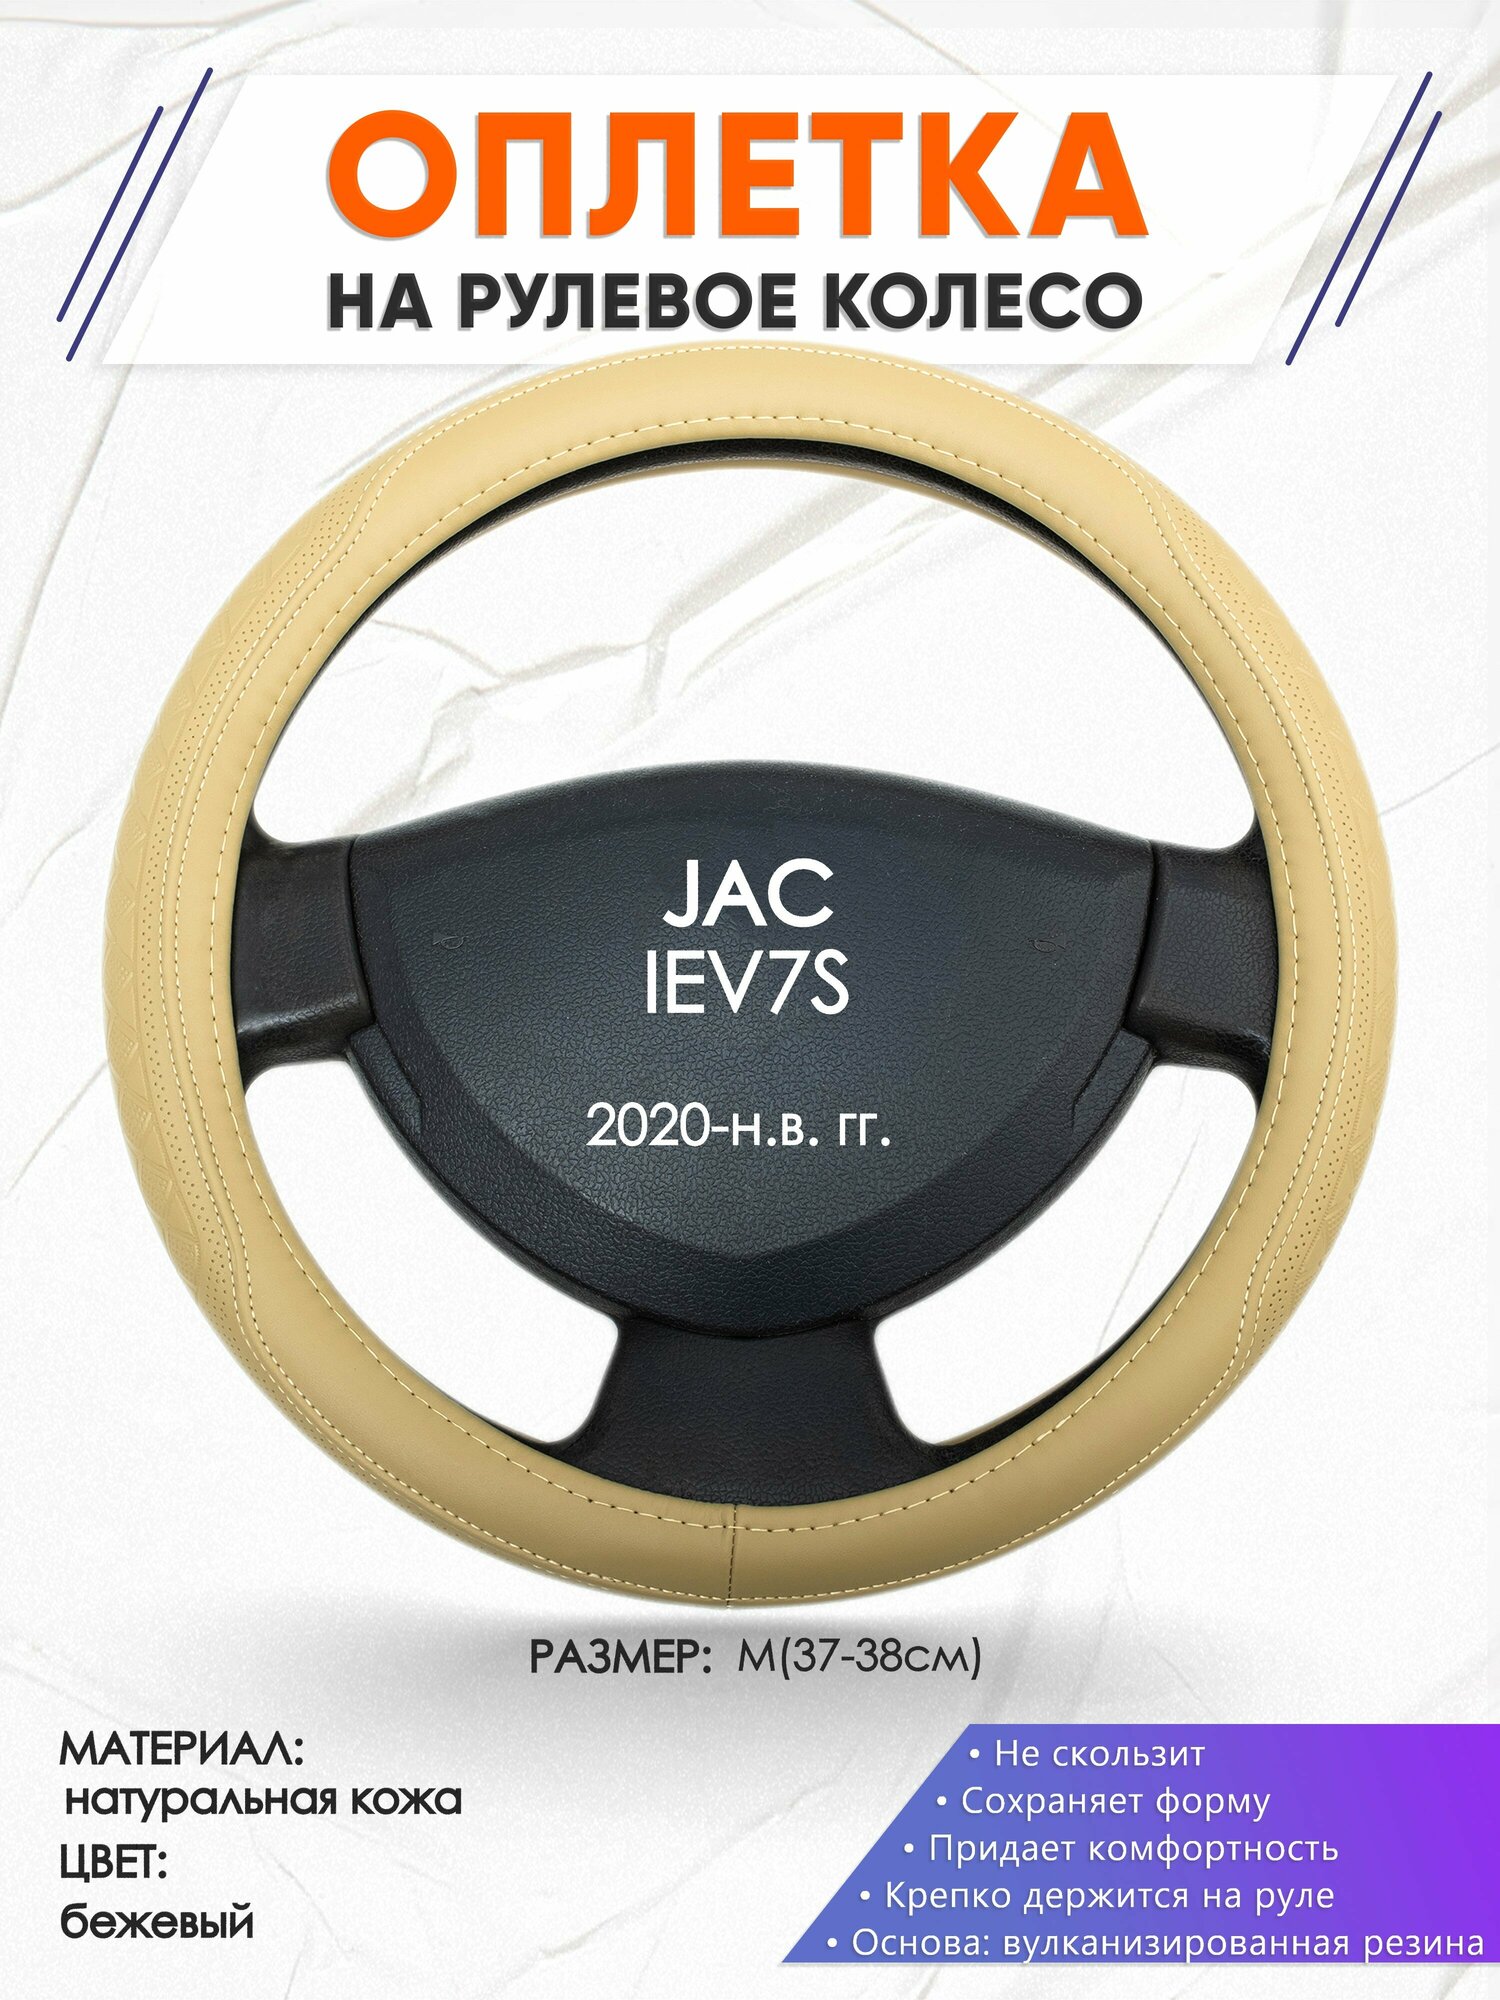 Оплетка наруль для JAC IEV7S(Джак ) 2020-н. в. годов выпуска, размер M(37-38см), Натуральная кожа 91